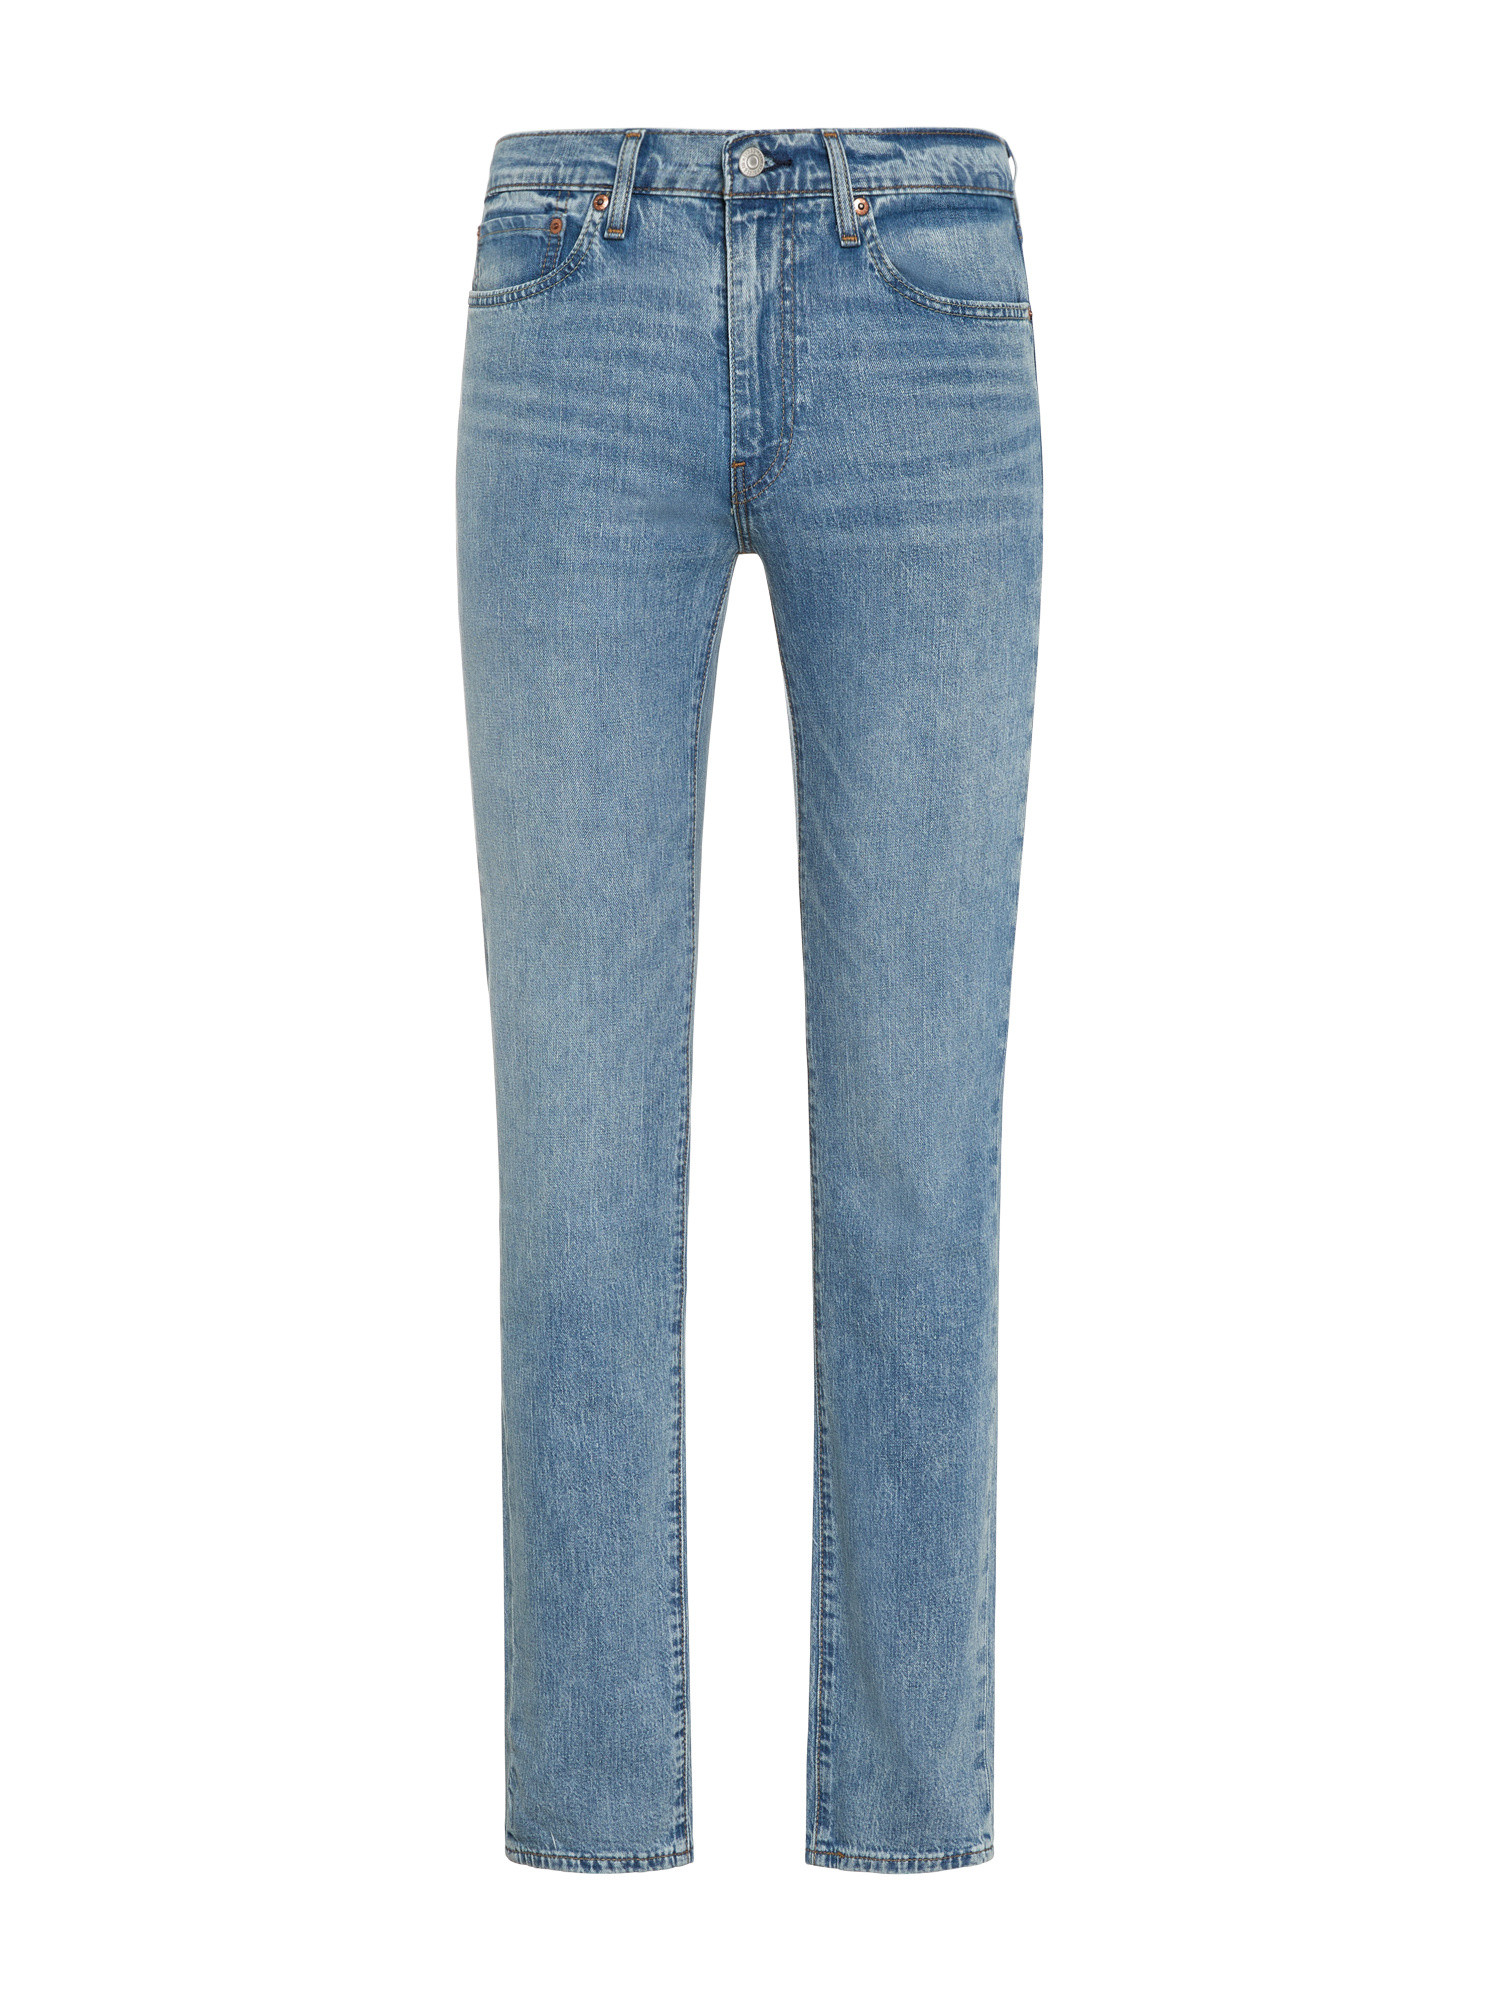 Levi’s - Slim fit 511 jeans, Light Blue, large image number 0